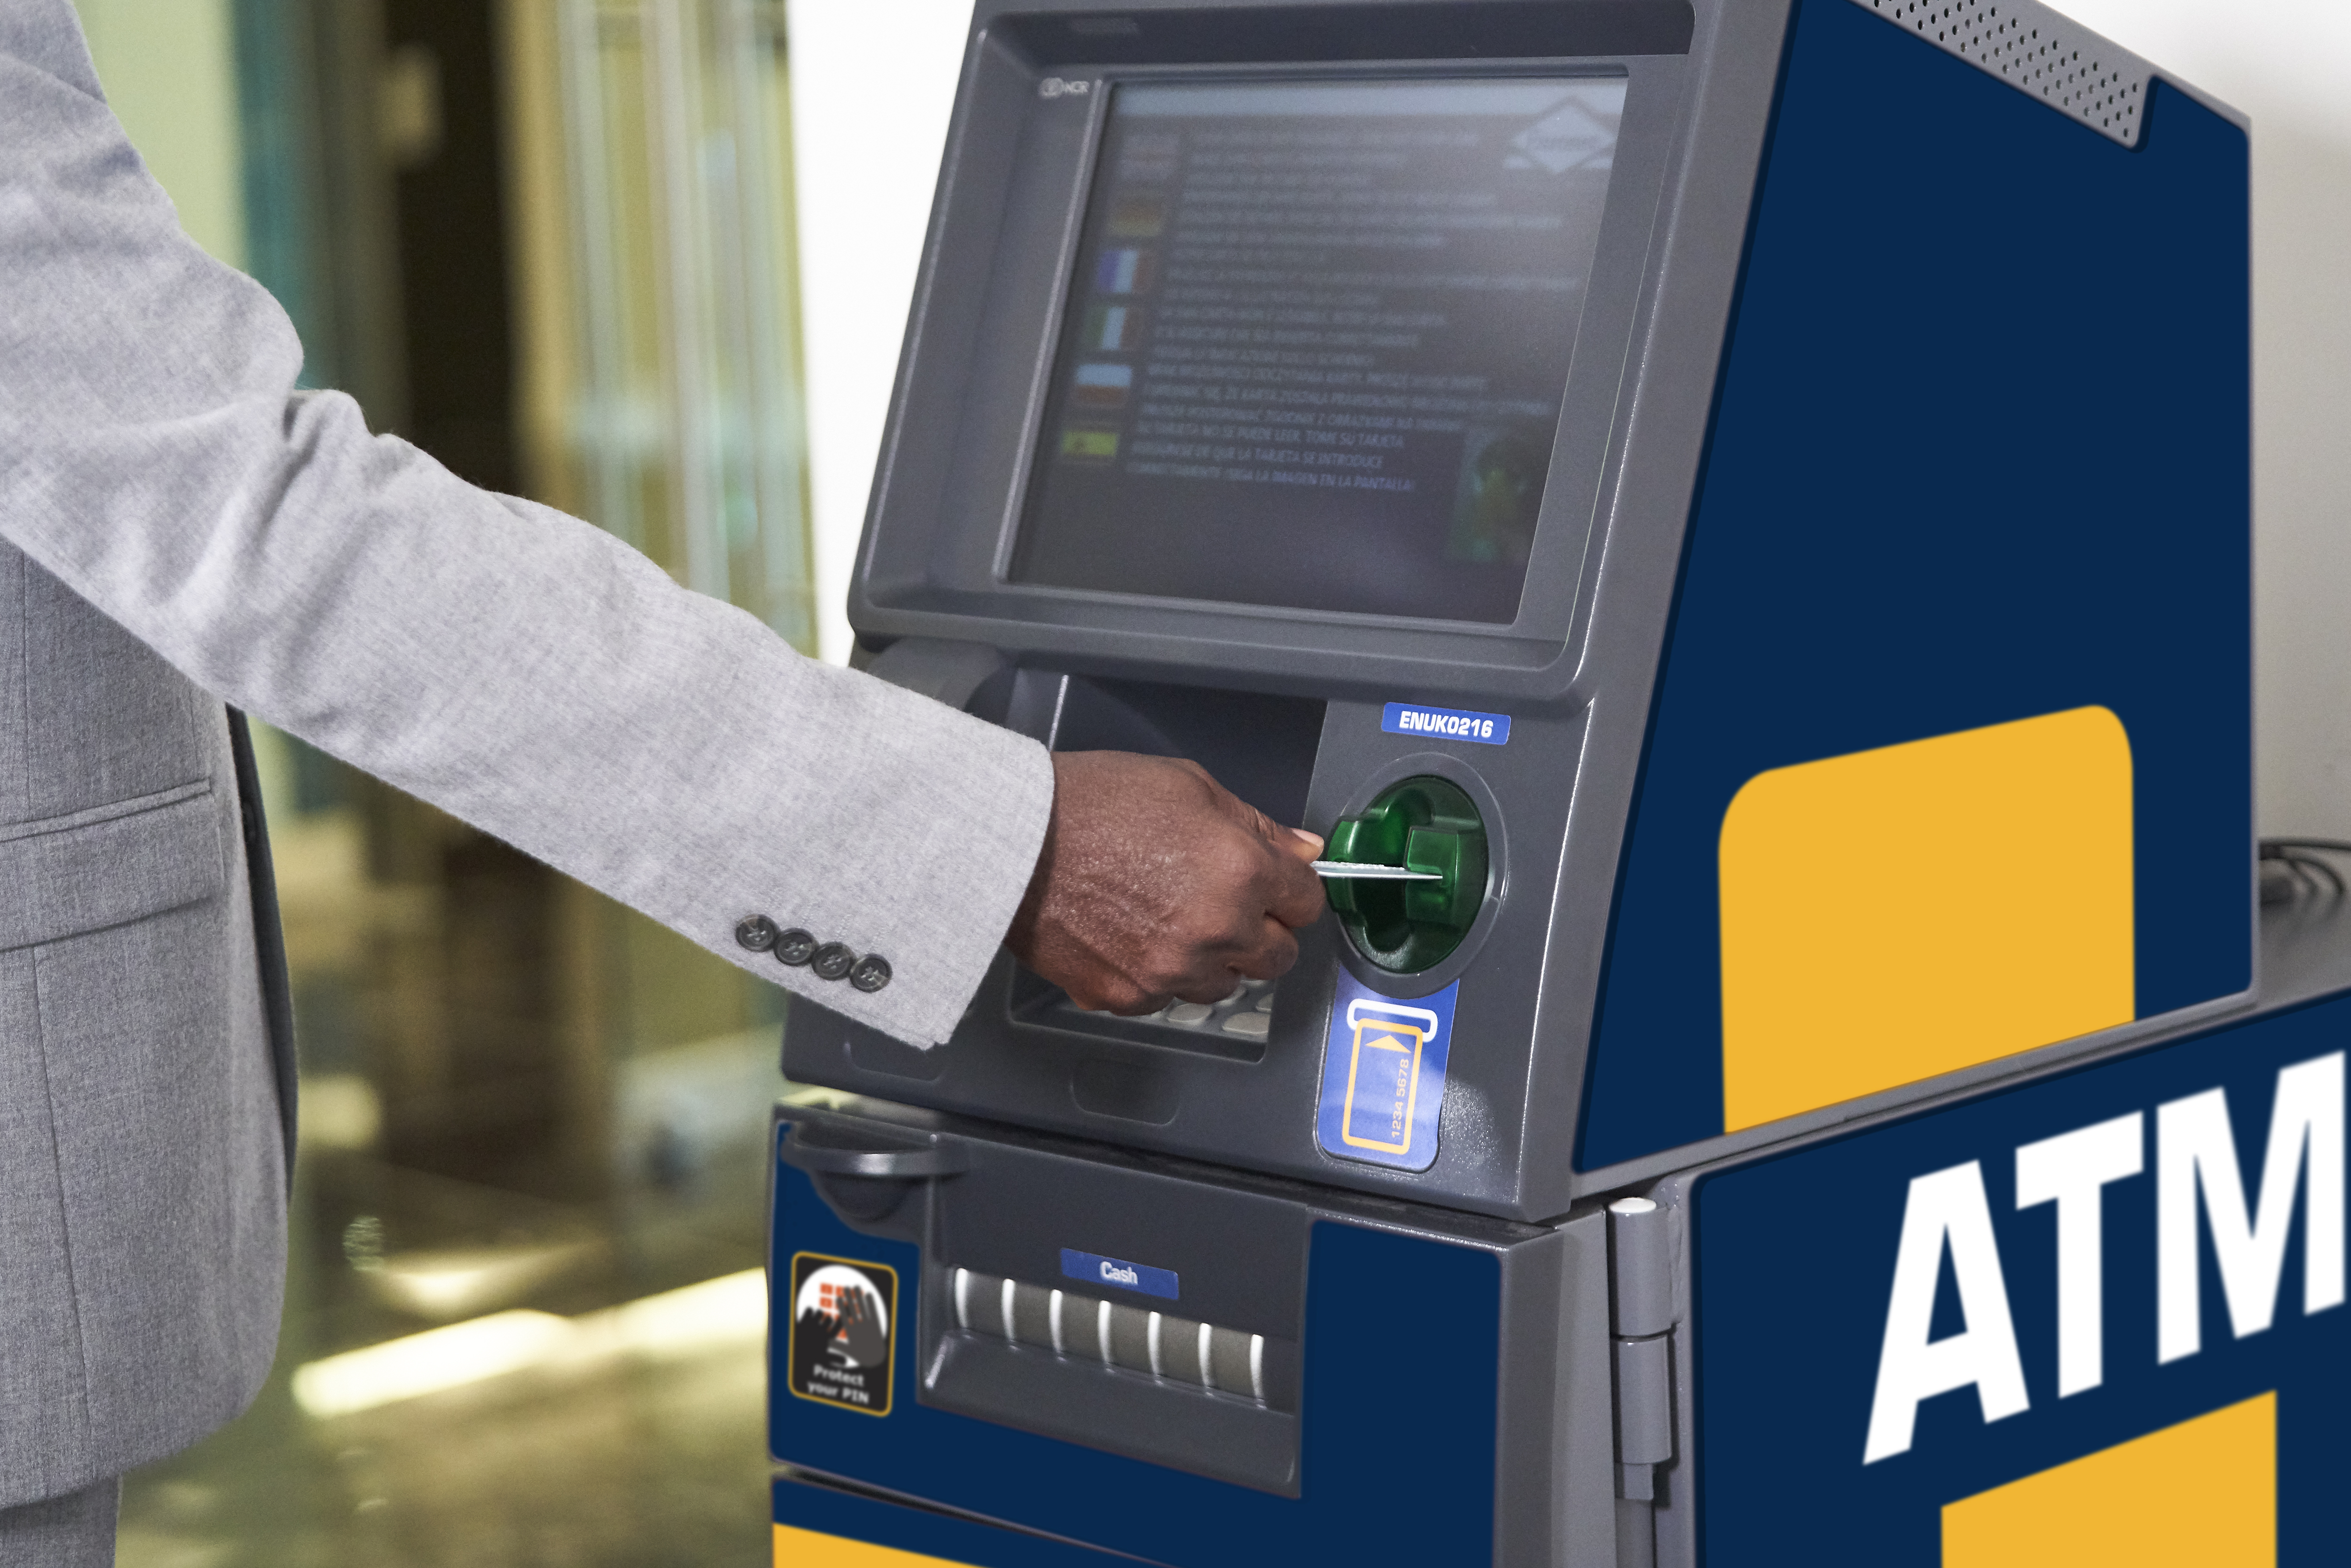 Обслуживание банкоматов терминалов